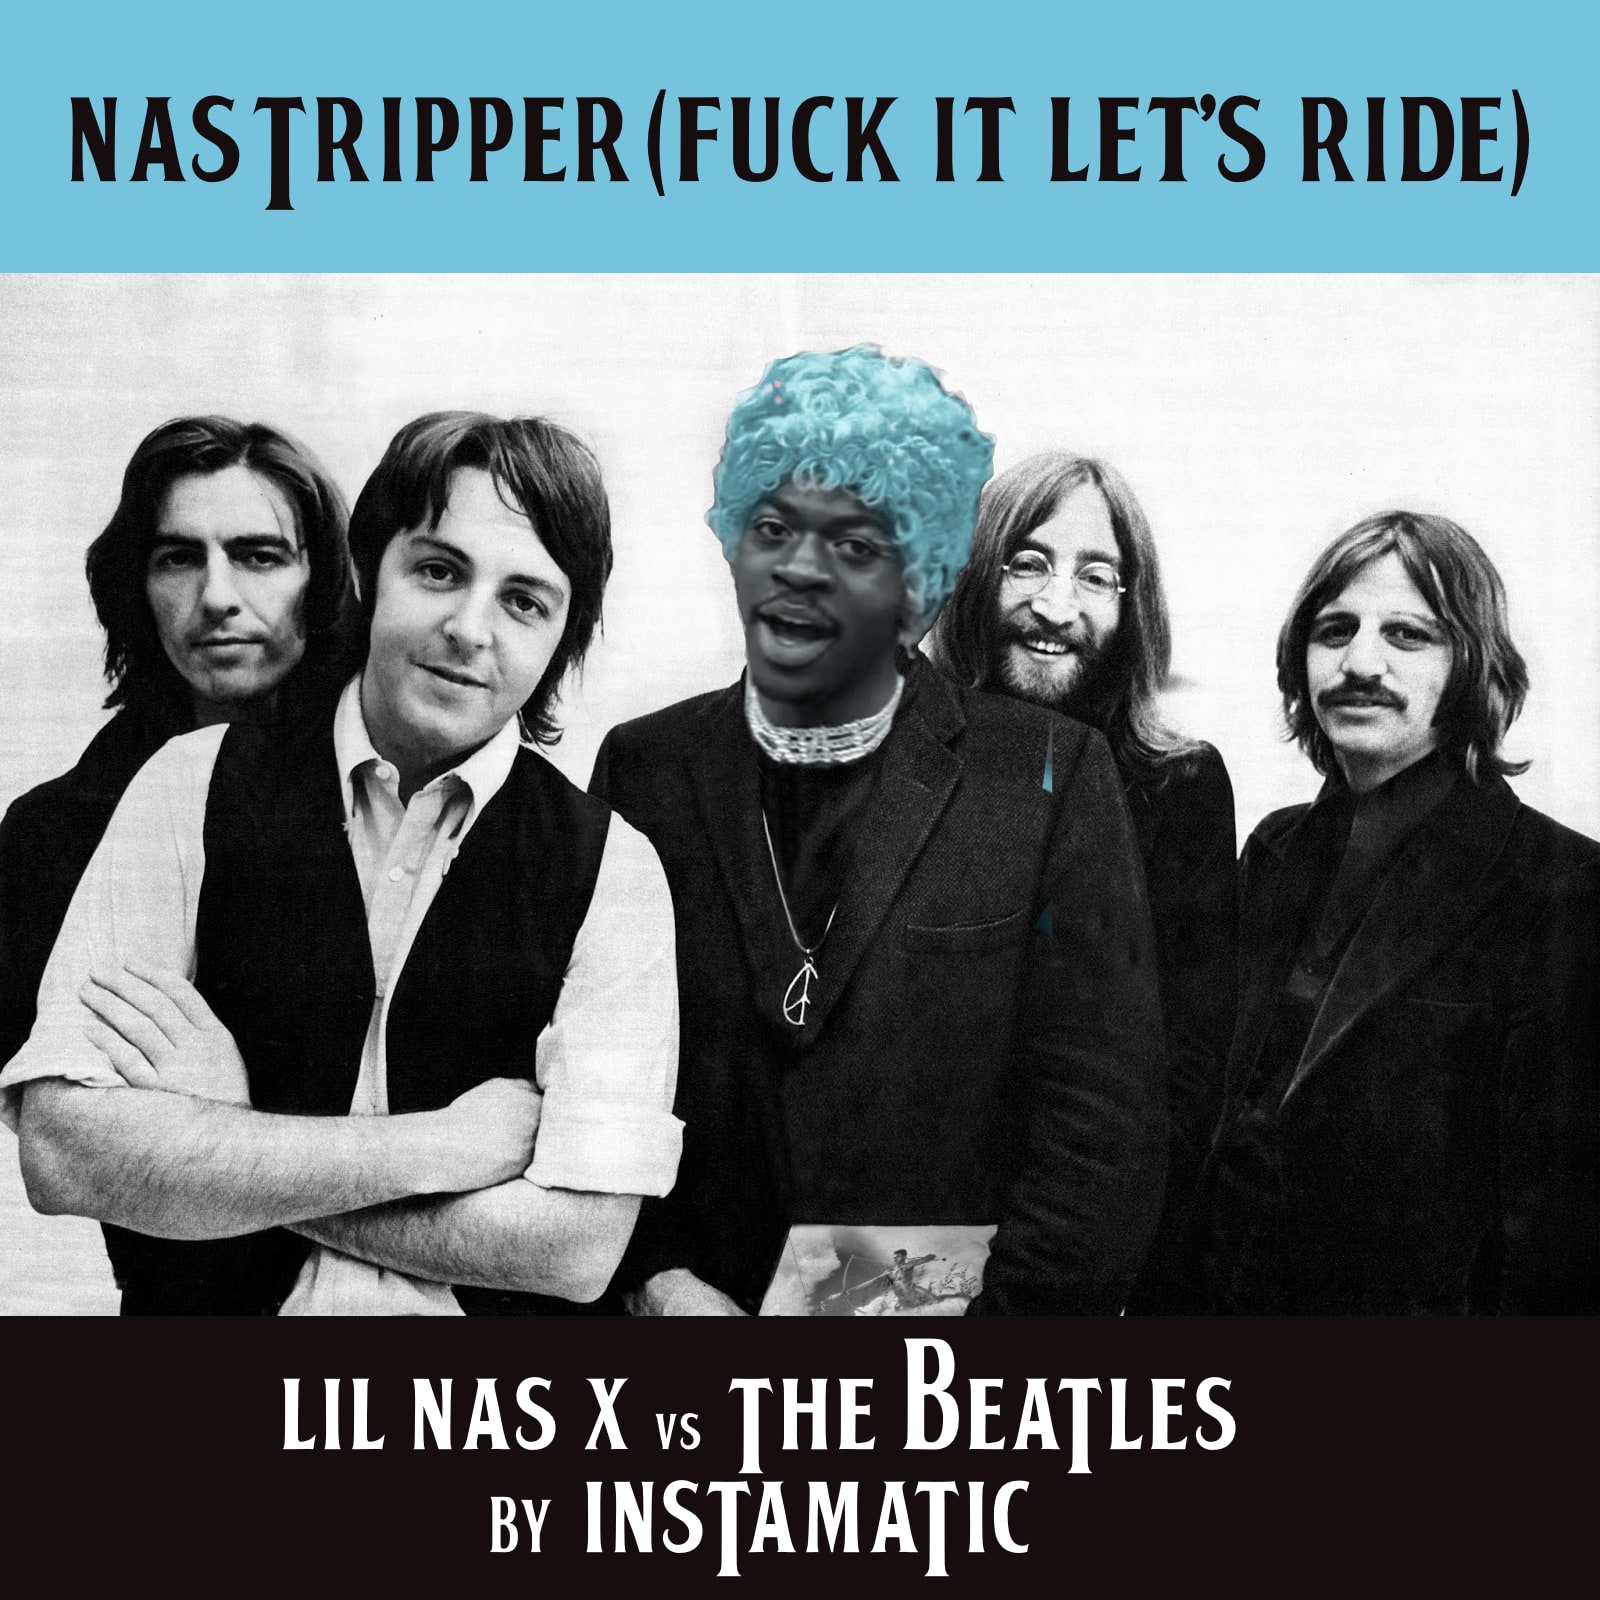 Nas Tripper (Lil Nas X vs Beatles again!)